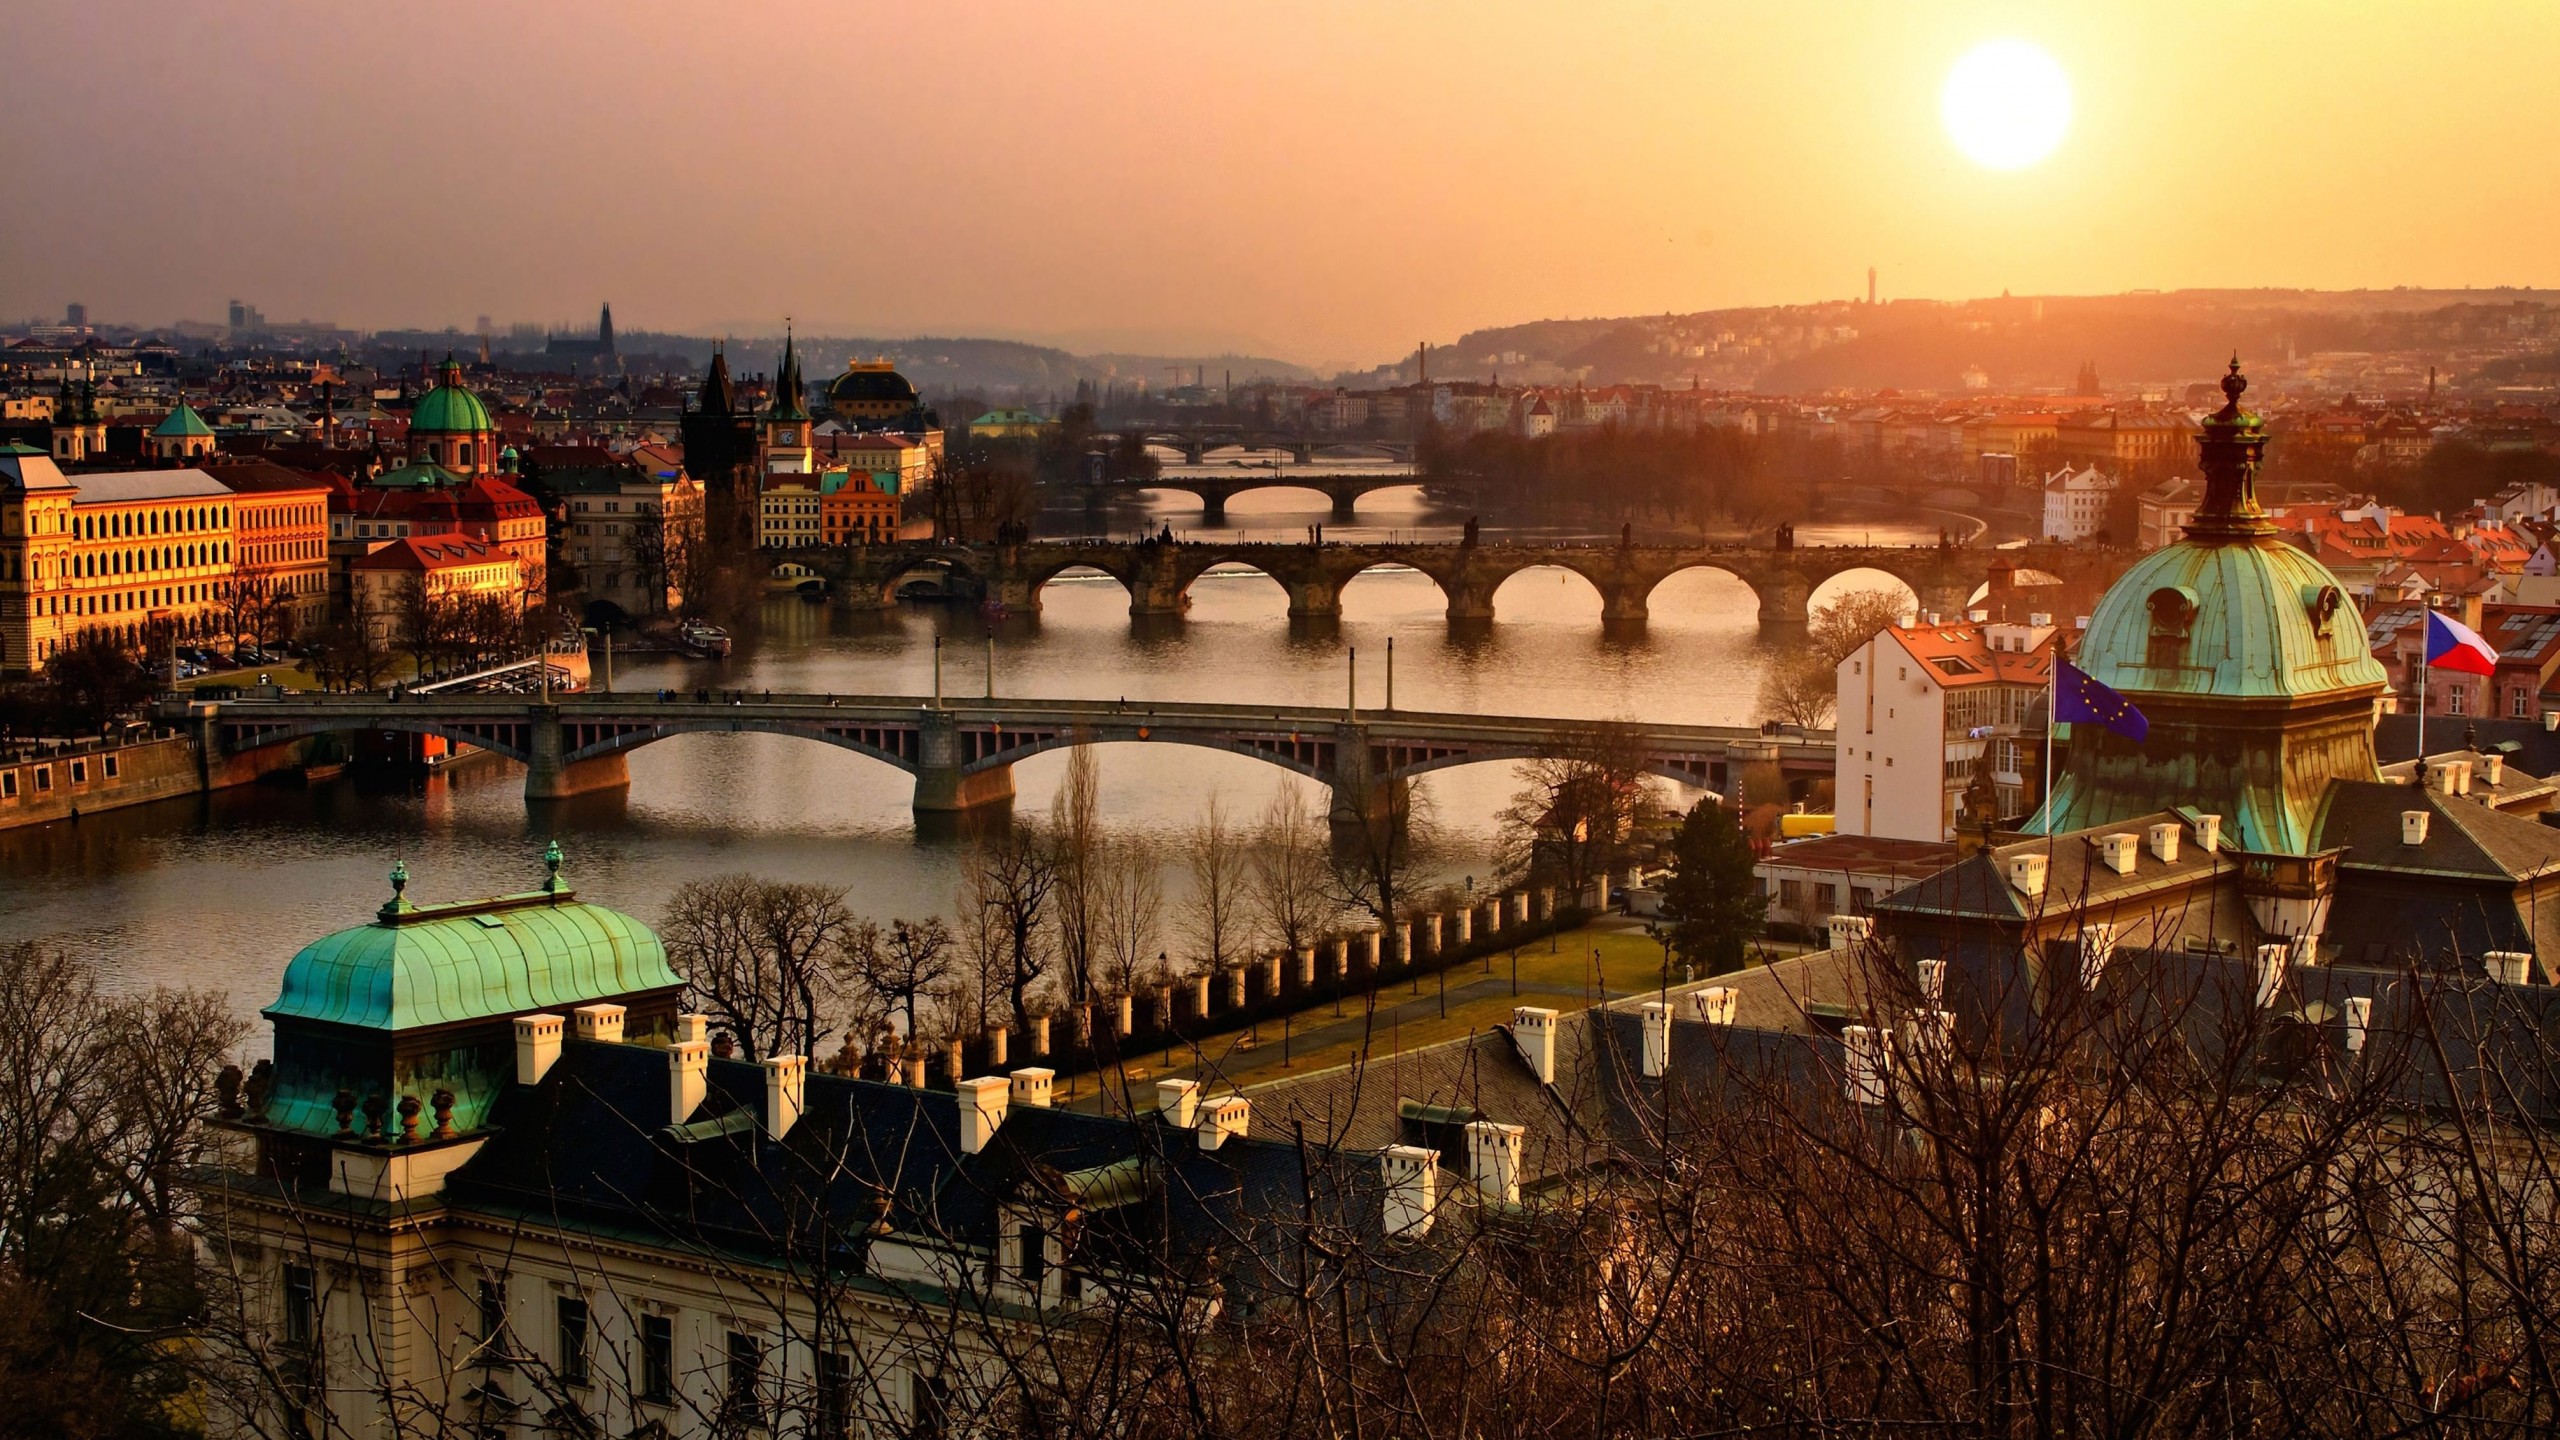 Vltava River in Prague Wallpaper for Desktop 2560x1440